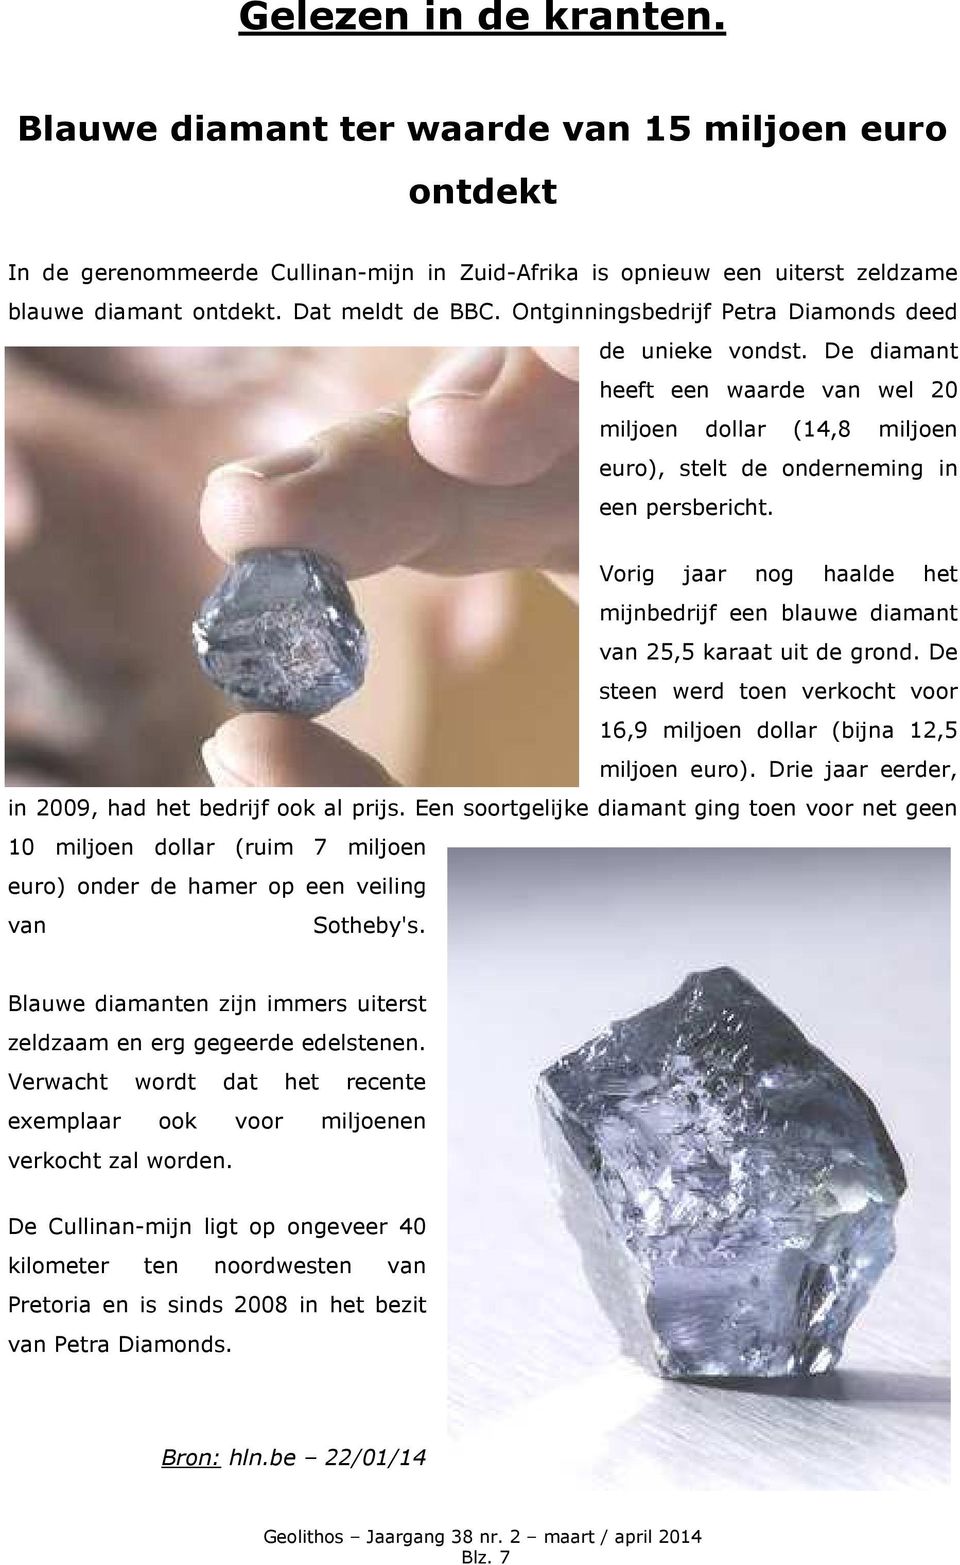 Vorig jaar nog haalde het mijnbedrijf een blauwe diamant van 25,5 karaat uit de grond. De steen werd toen verkocht voor 16,9 miljoen dollar (bijna 12,5 miljoen euro).